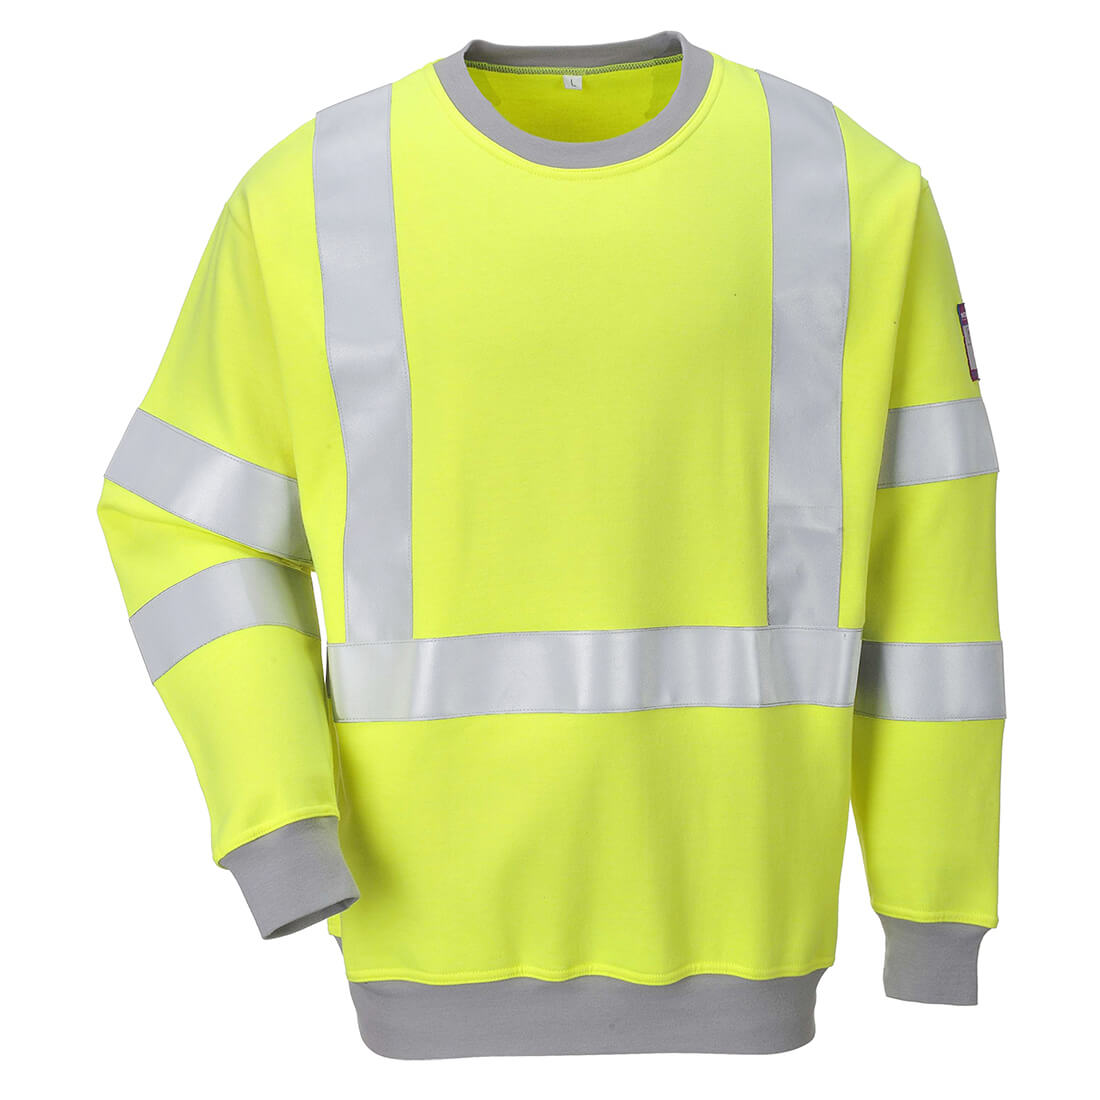 Image of Modaflame Mens Flame Resistant Hi Vis Sweatshirt Yellow M